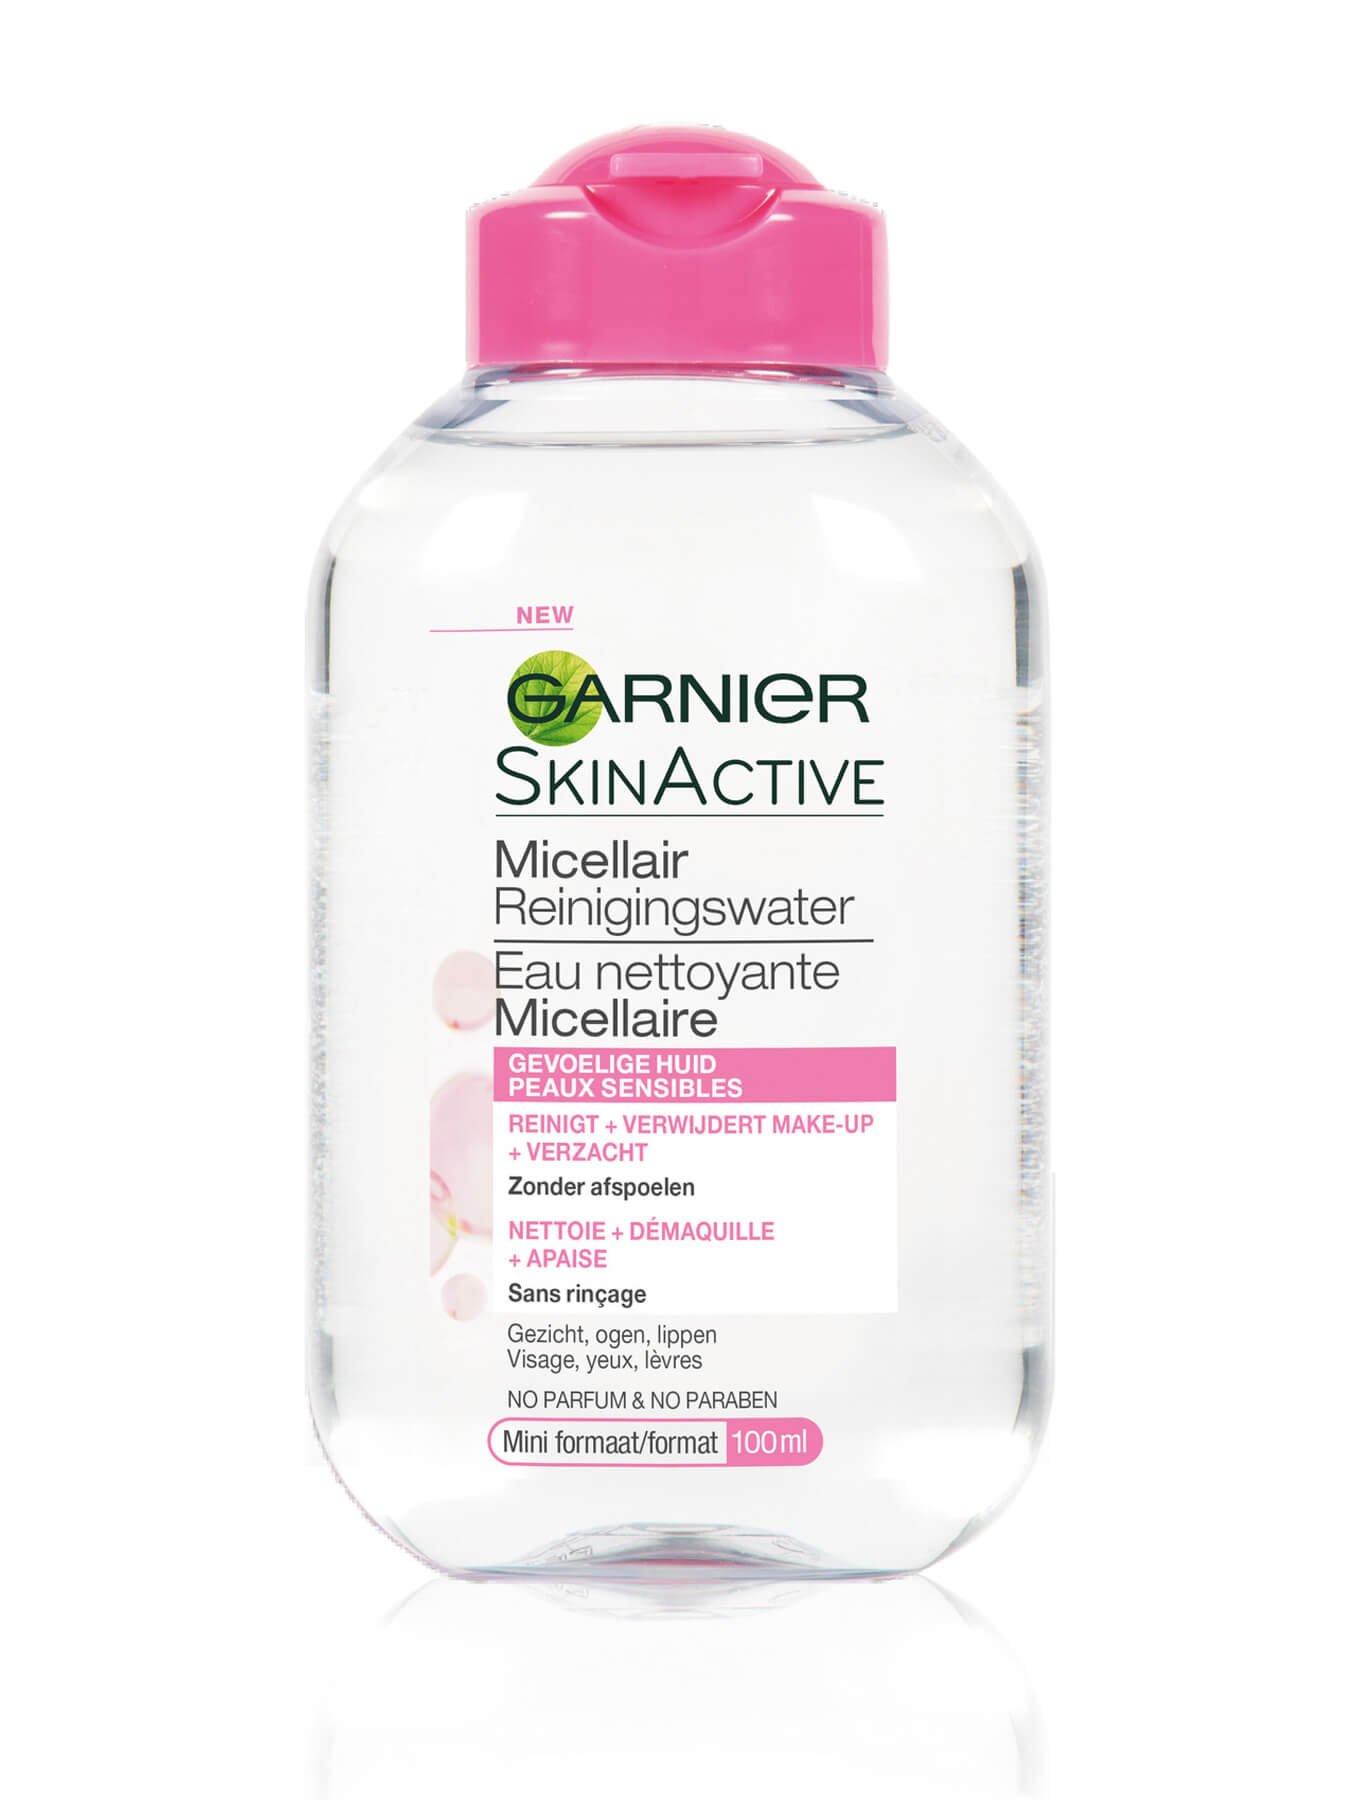 Garnier SkinActive micellair reinigingswater gevoelige huid